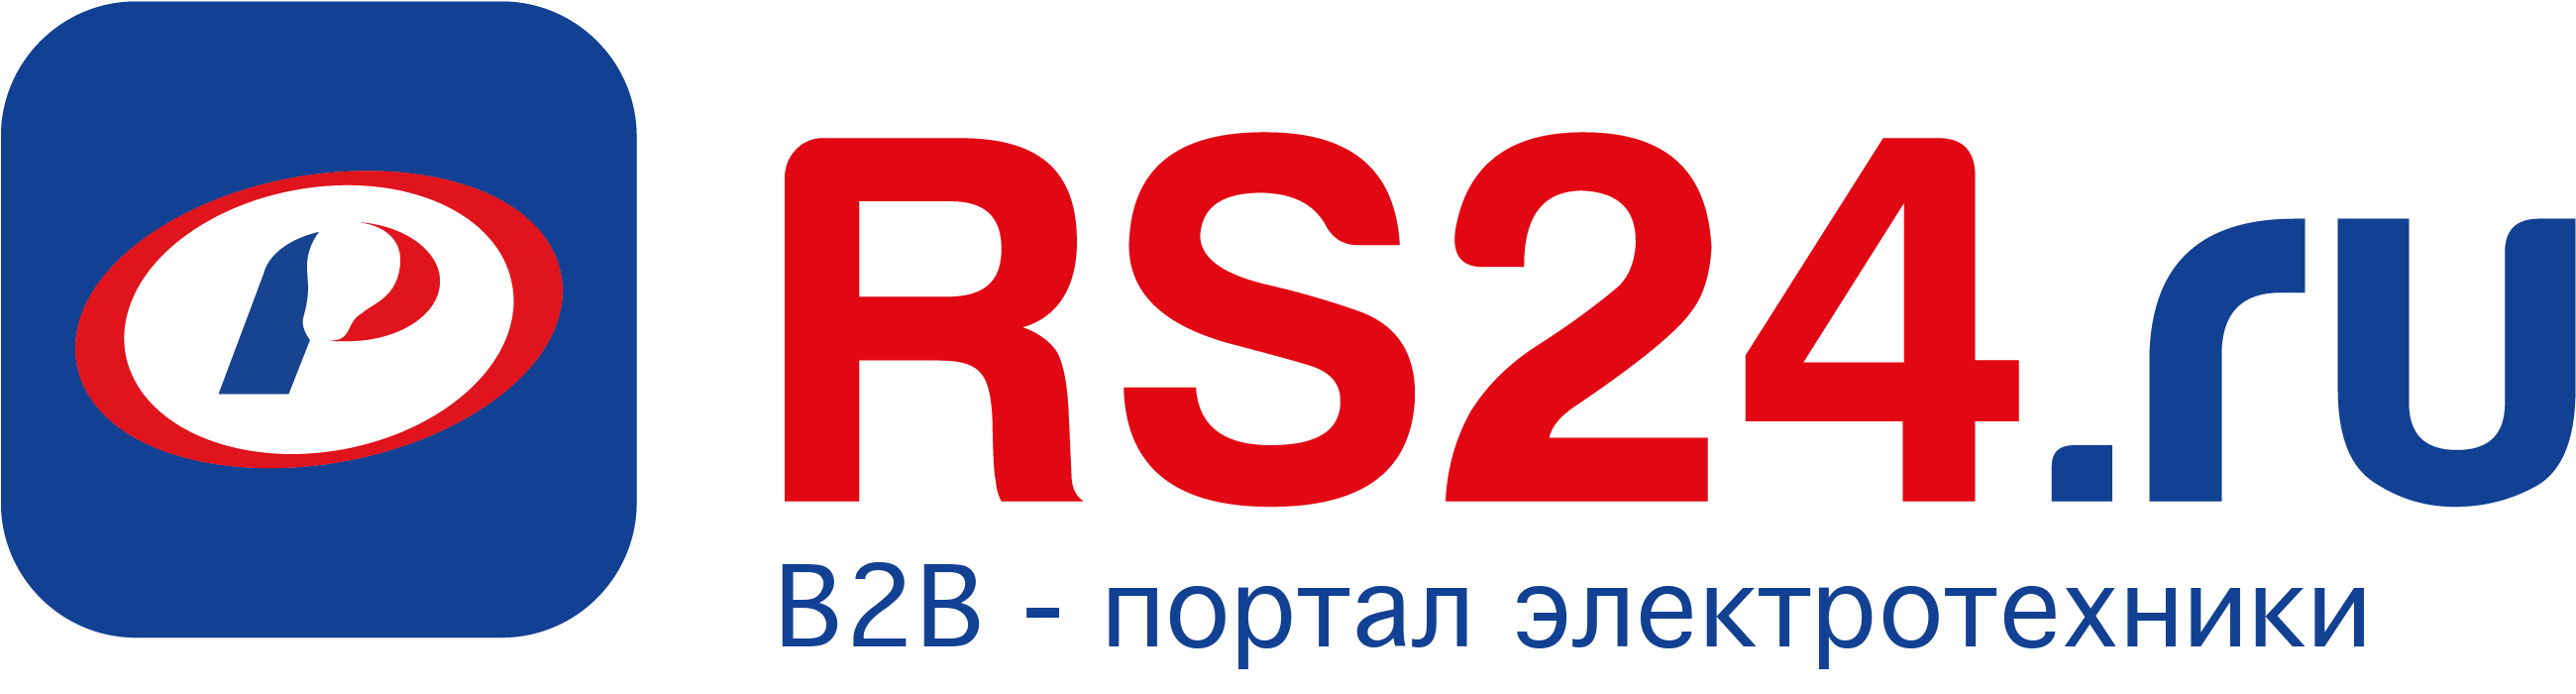 Стартер OSRAM ST-111 4-65W 220-240V 4008321364883 СМ 4008321364876 - купить  по недорогой цене на Shop220 в Москве и РФ